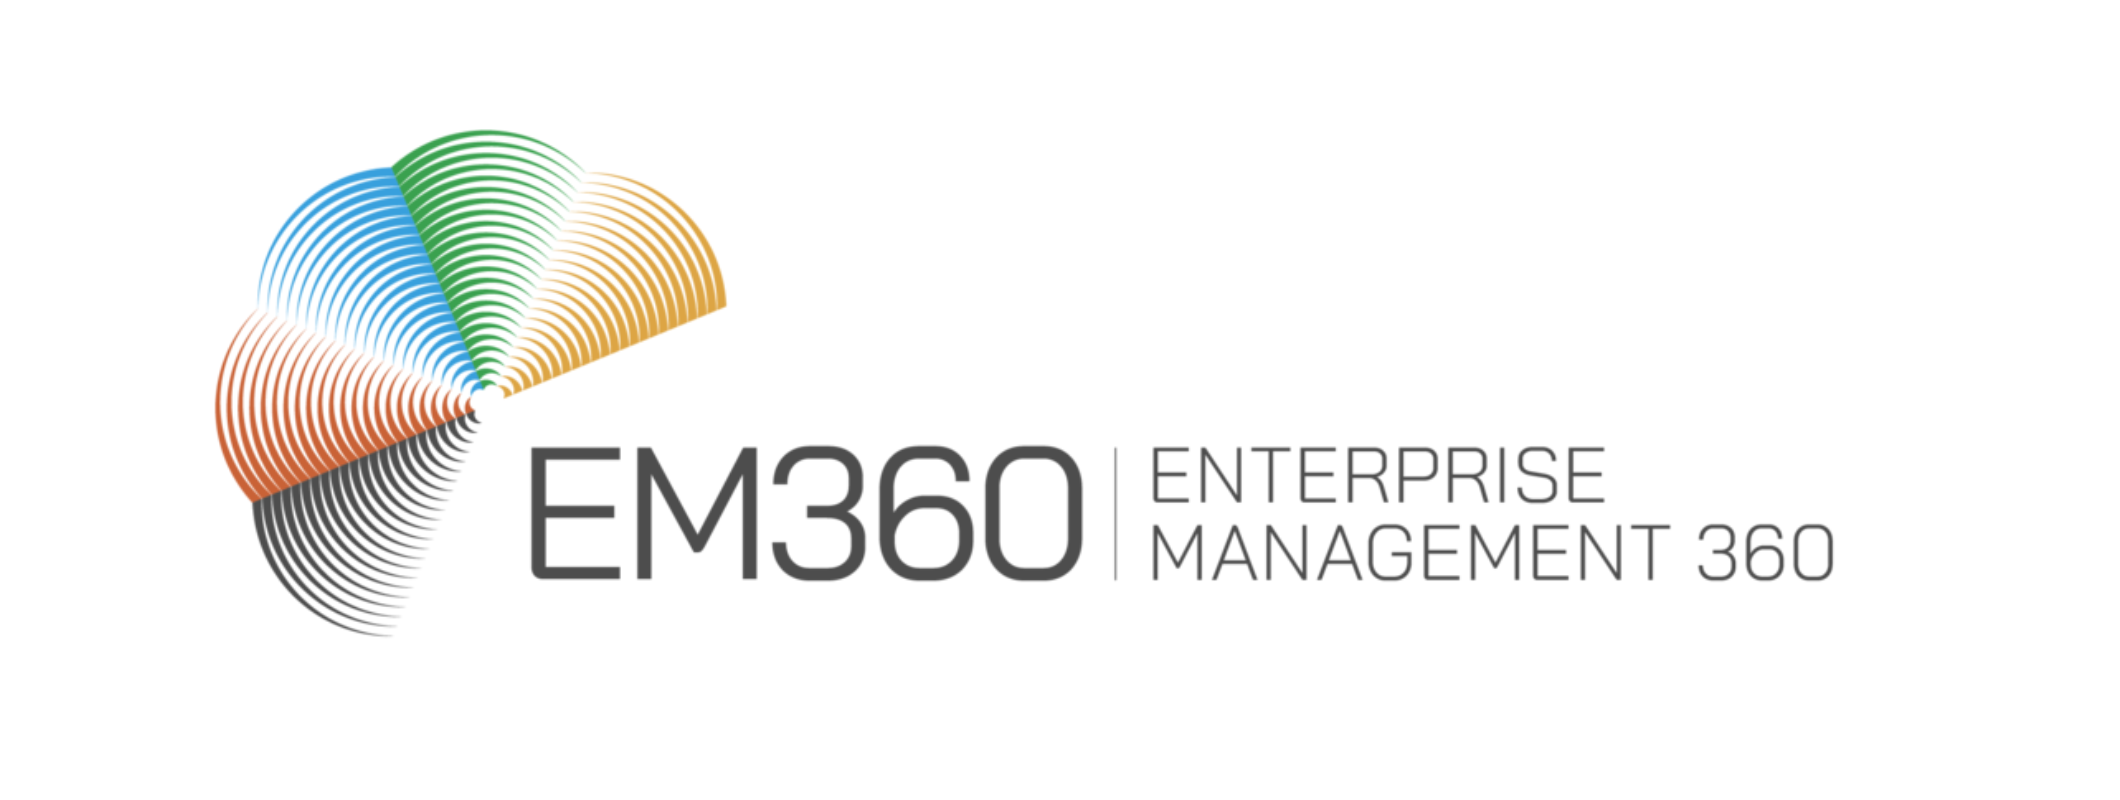 EM360